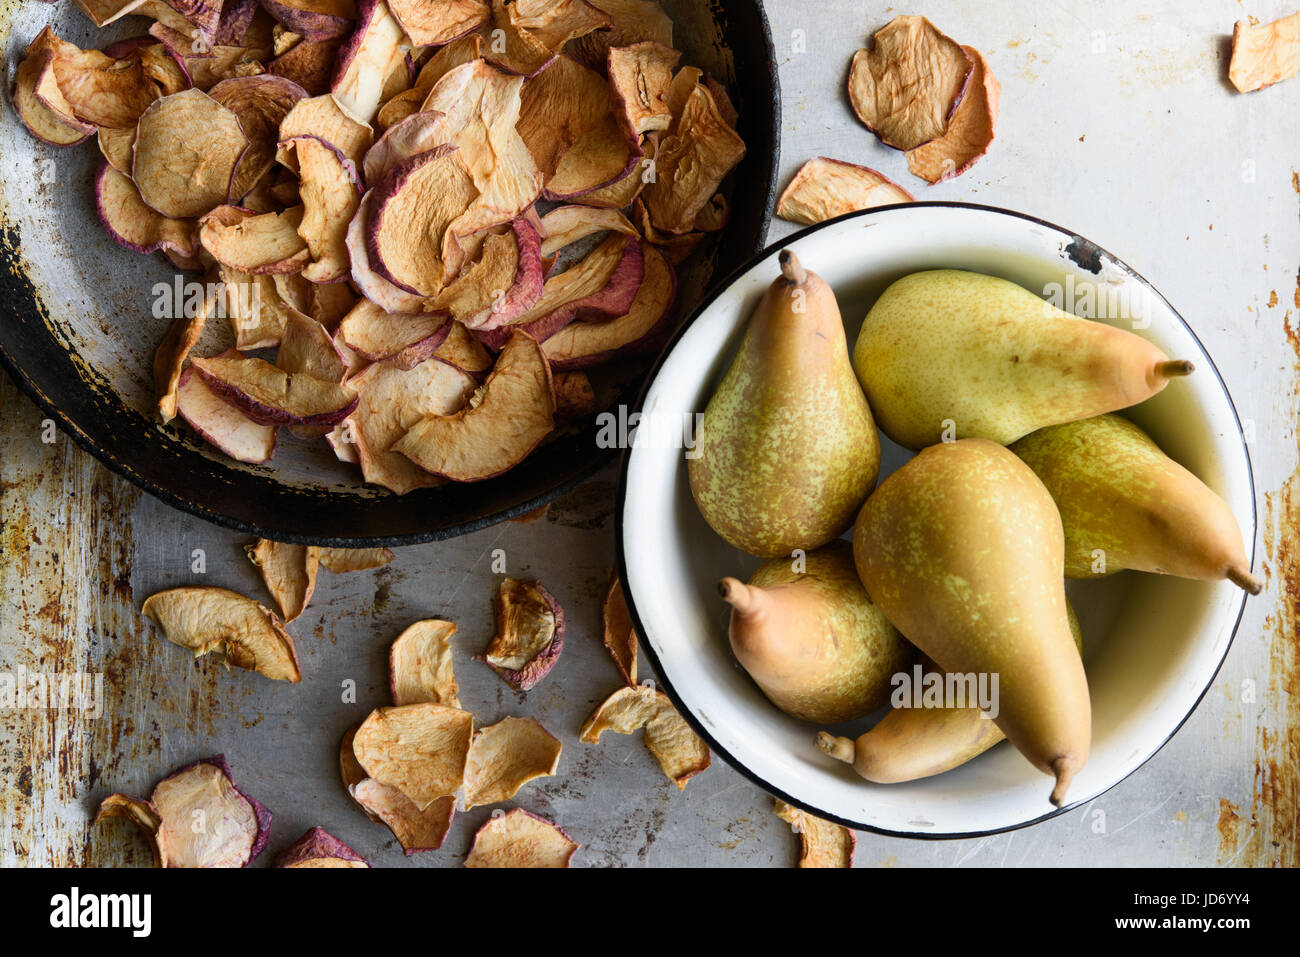 Vue de dessus : pommes et poires séchées dans des bols. Style vintage rustique Banque D'Images